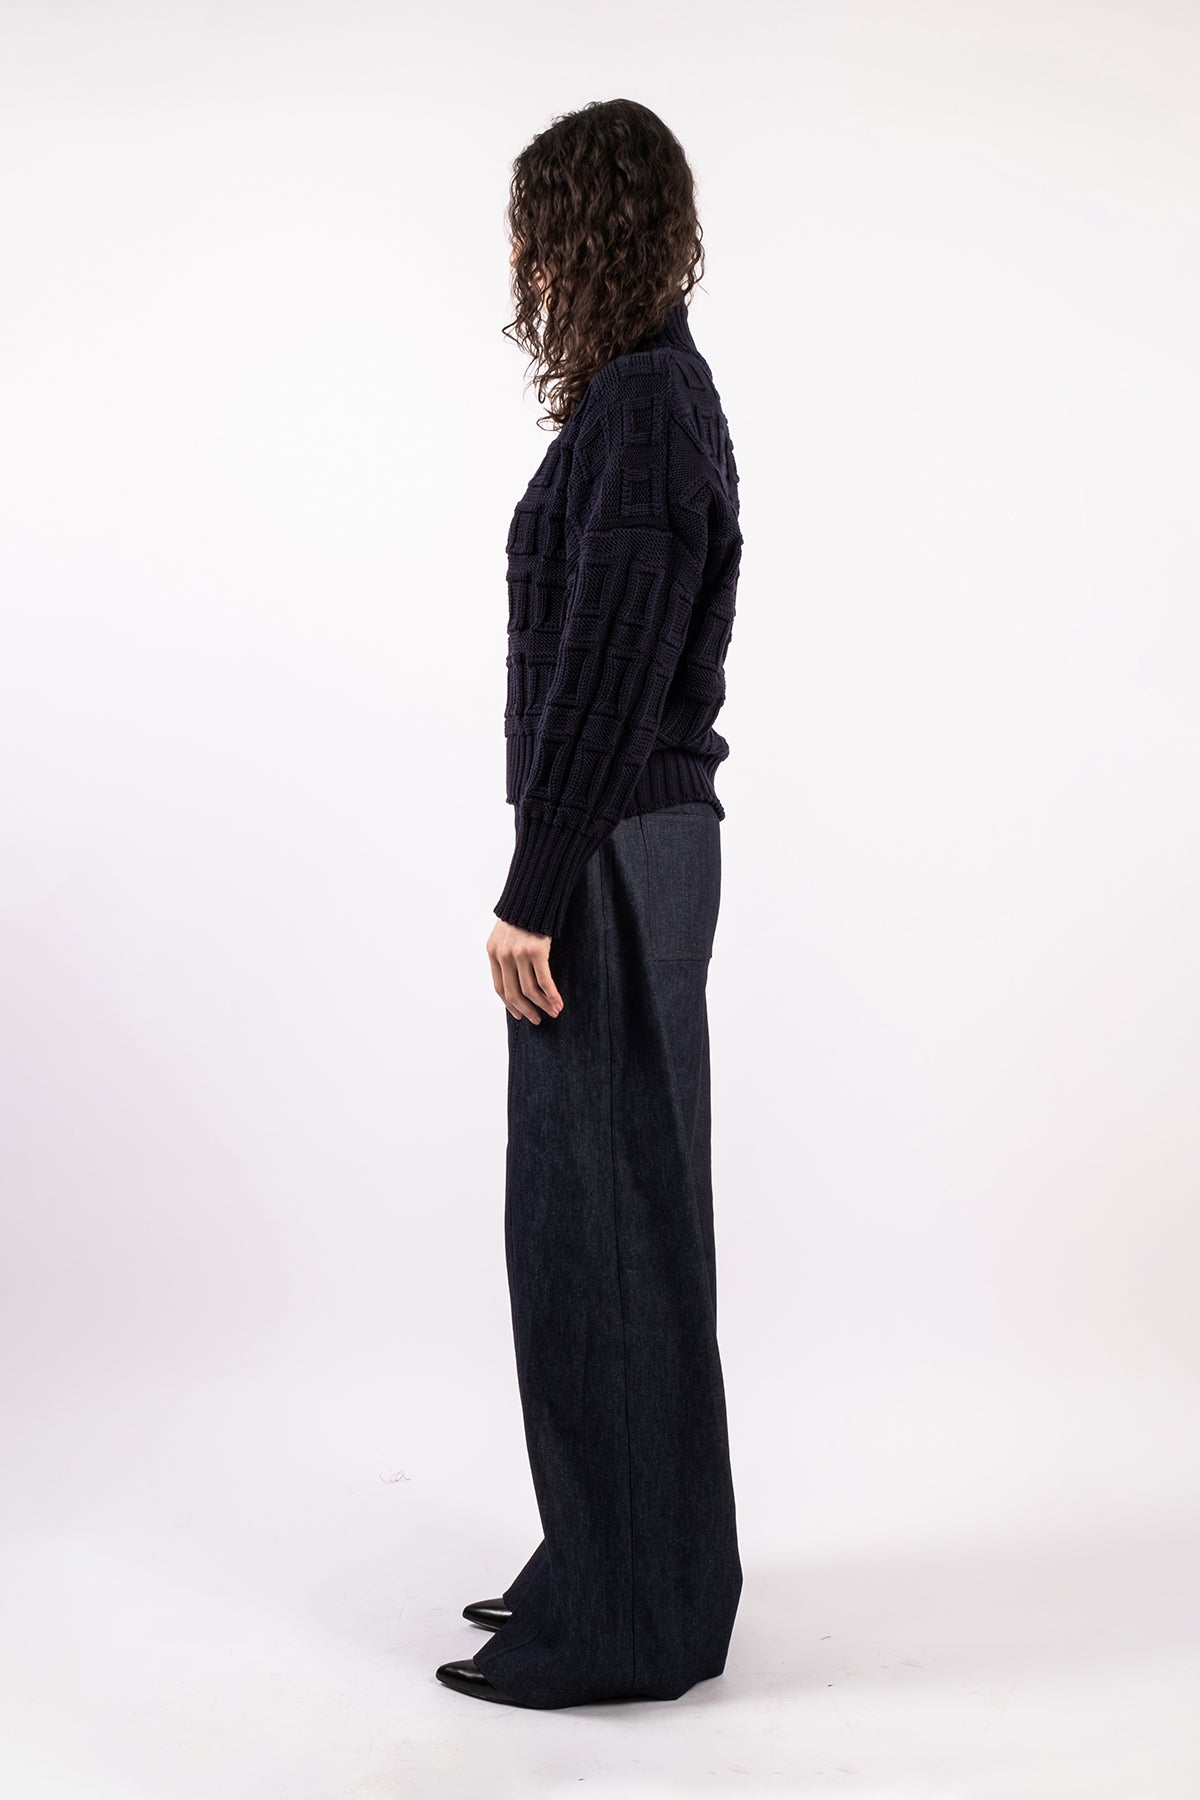 Merino wool jumper, short version